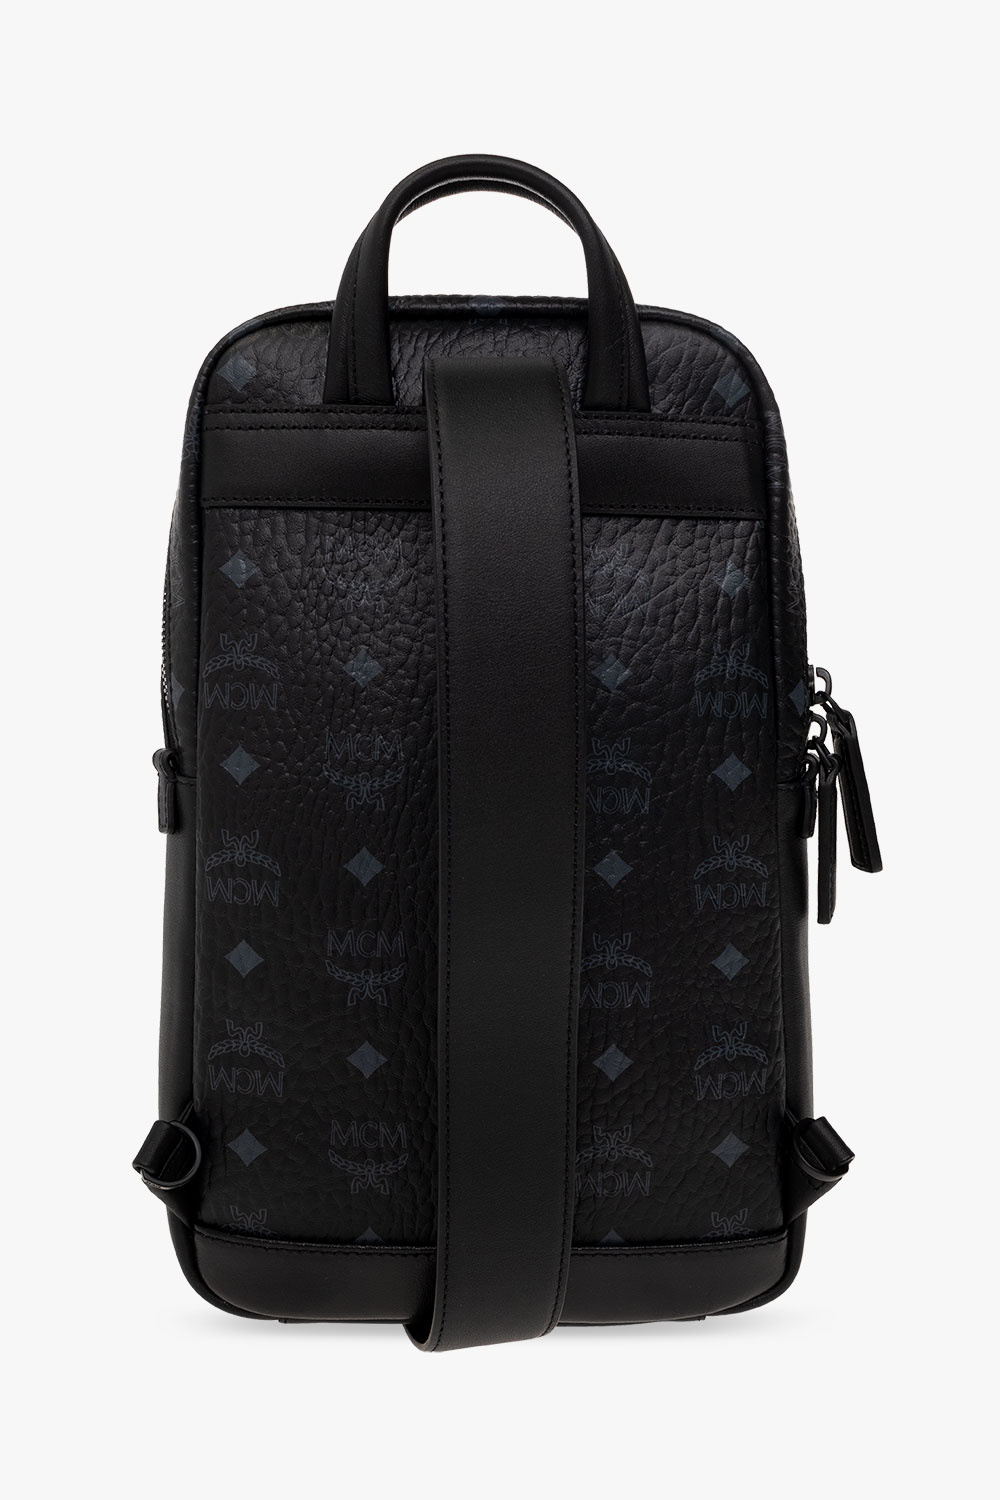 MCM One-shoulder backpack